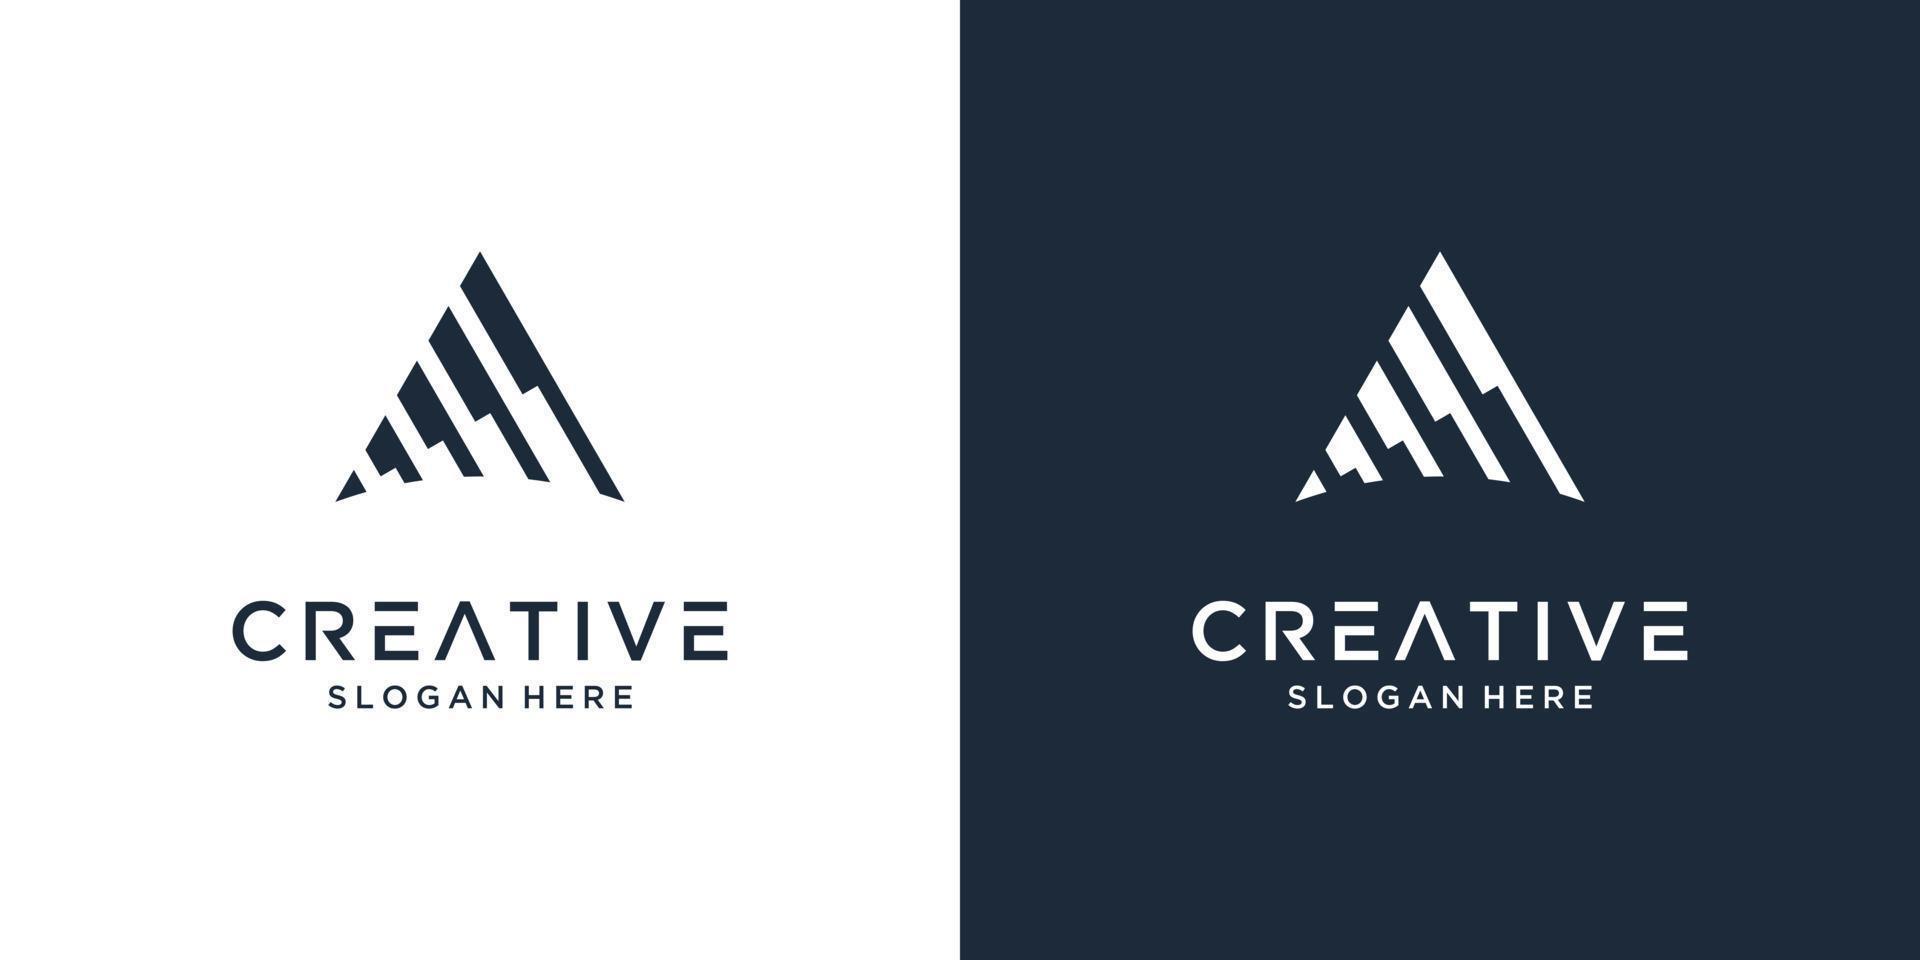 Creative letter A logo design inspiration vector